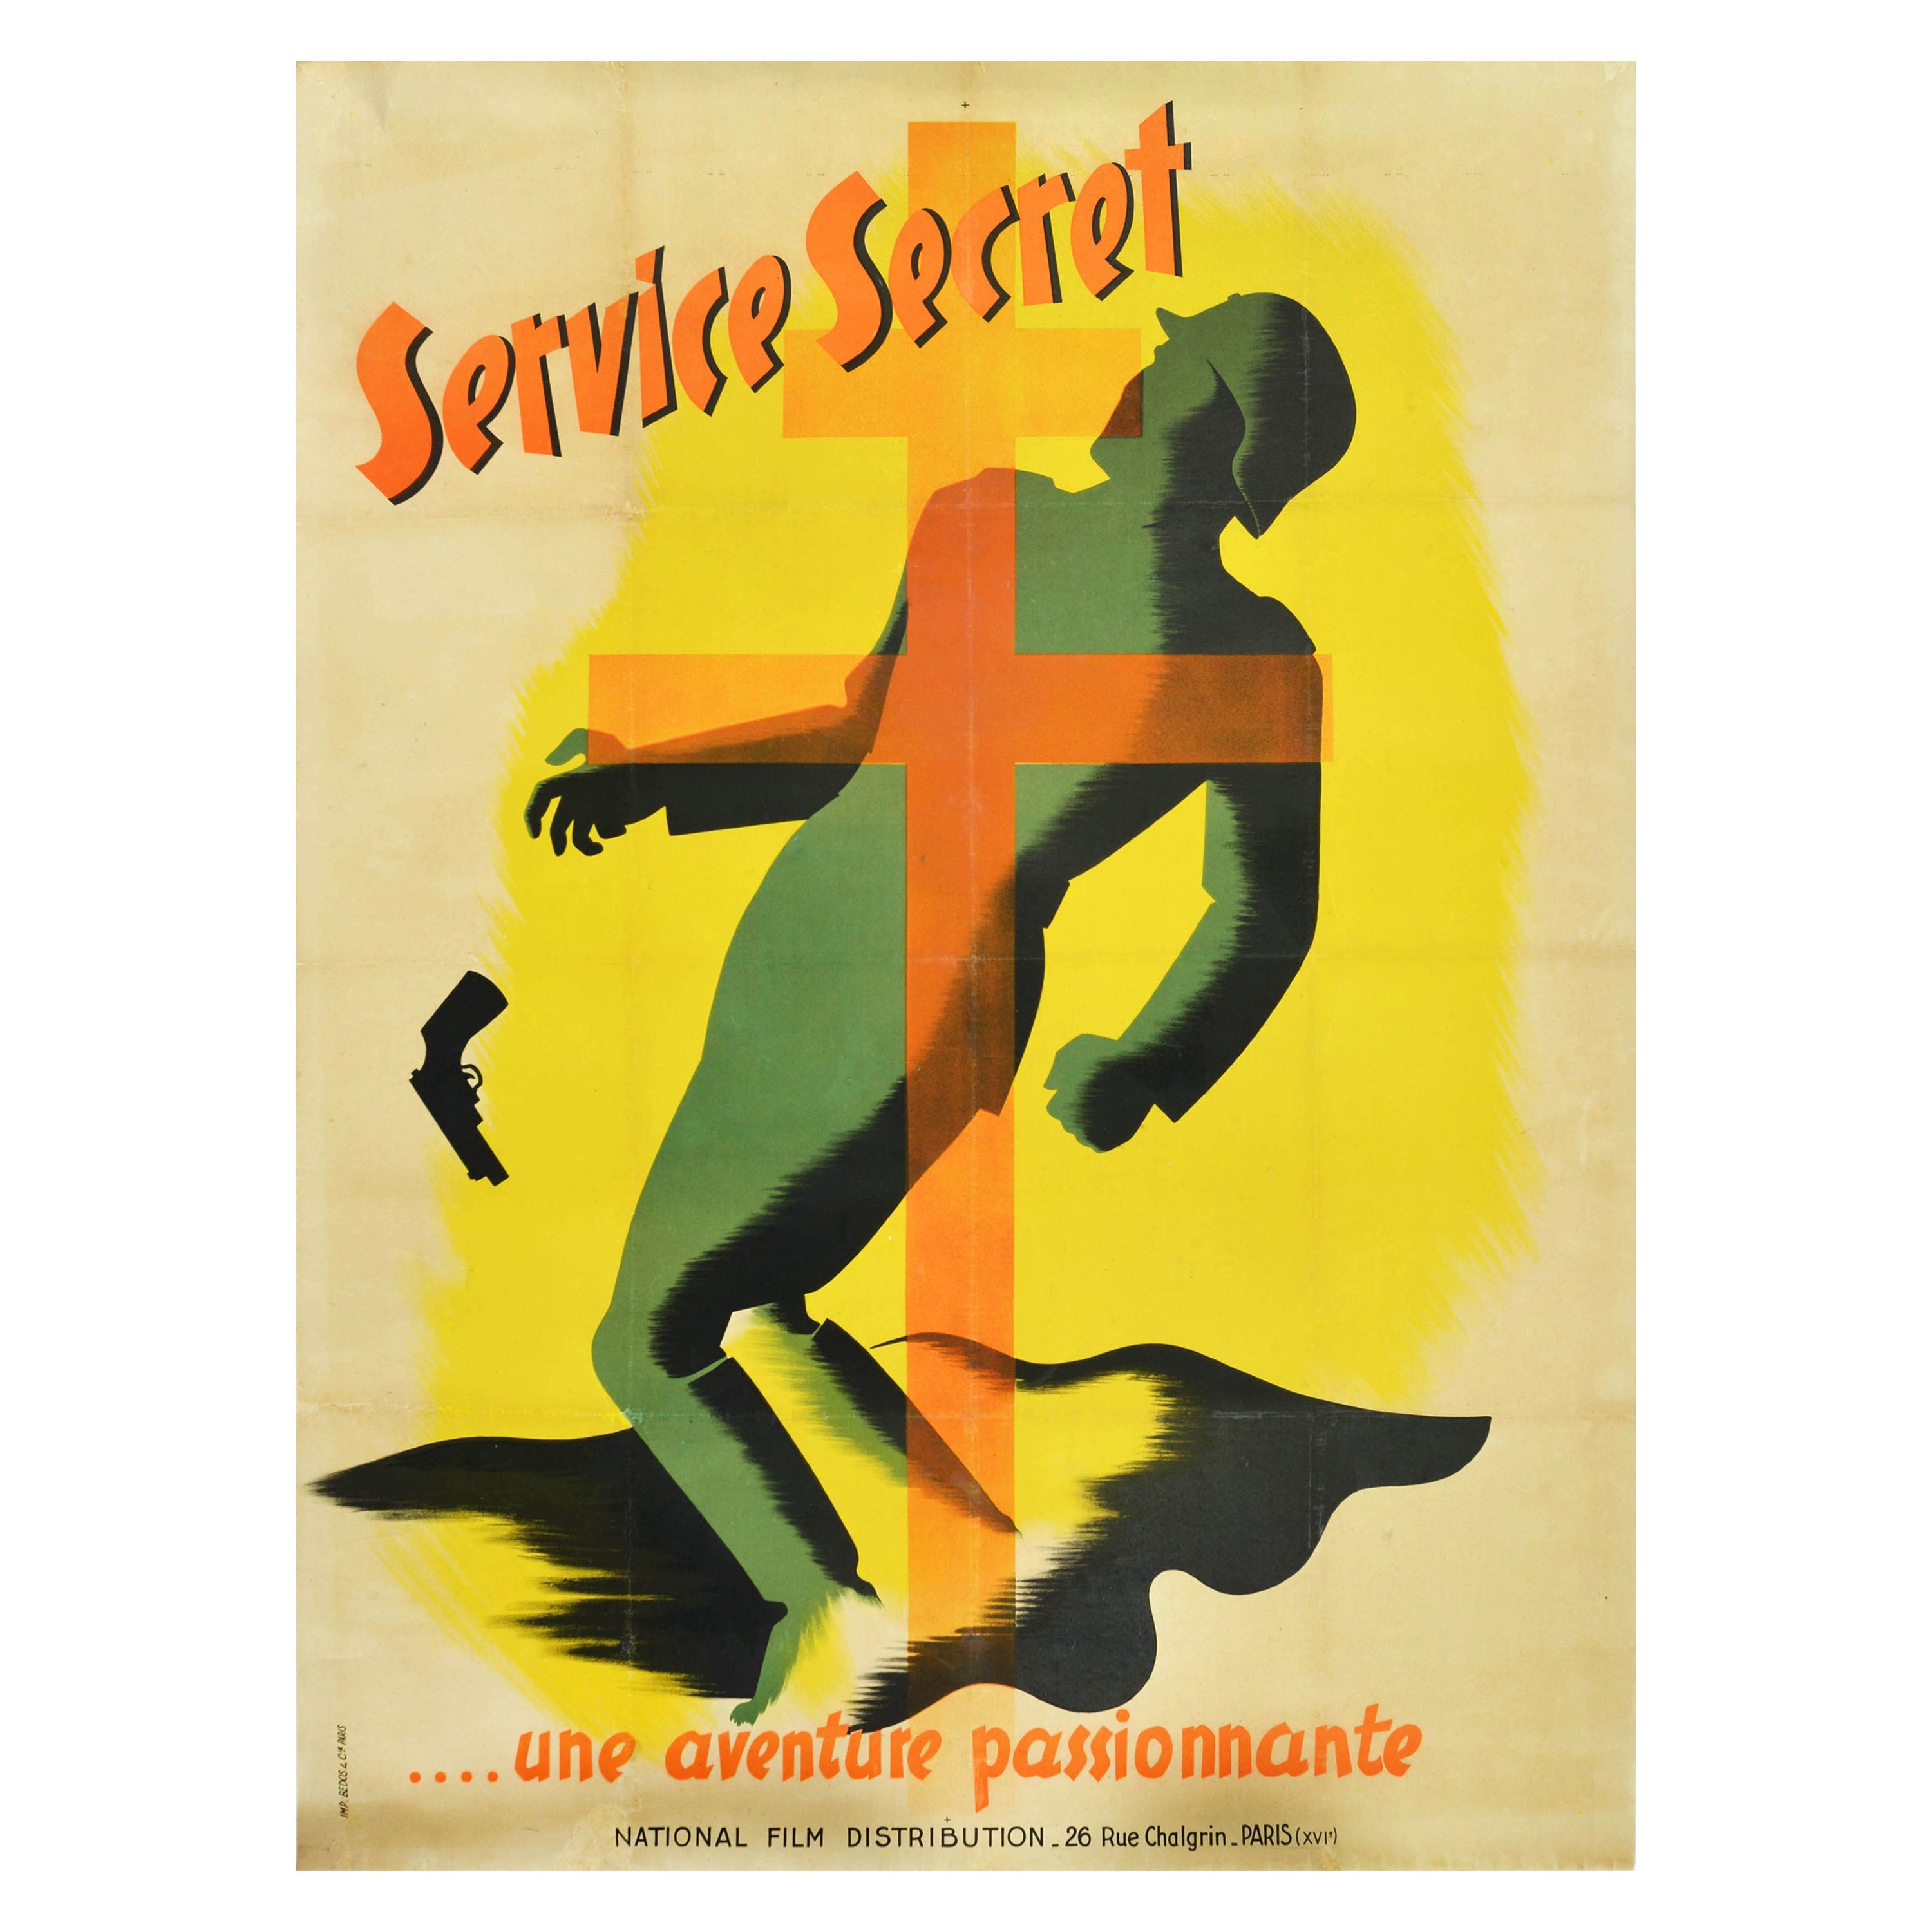 Original Vintage WWII Film Poster Service Secret Mission Spy War Drama Movie Art For Sale